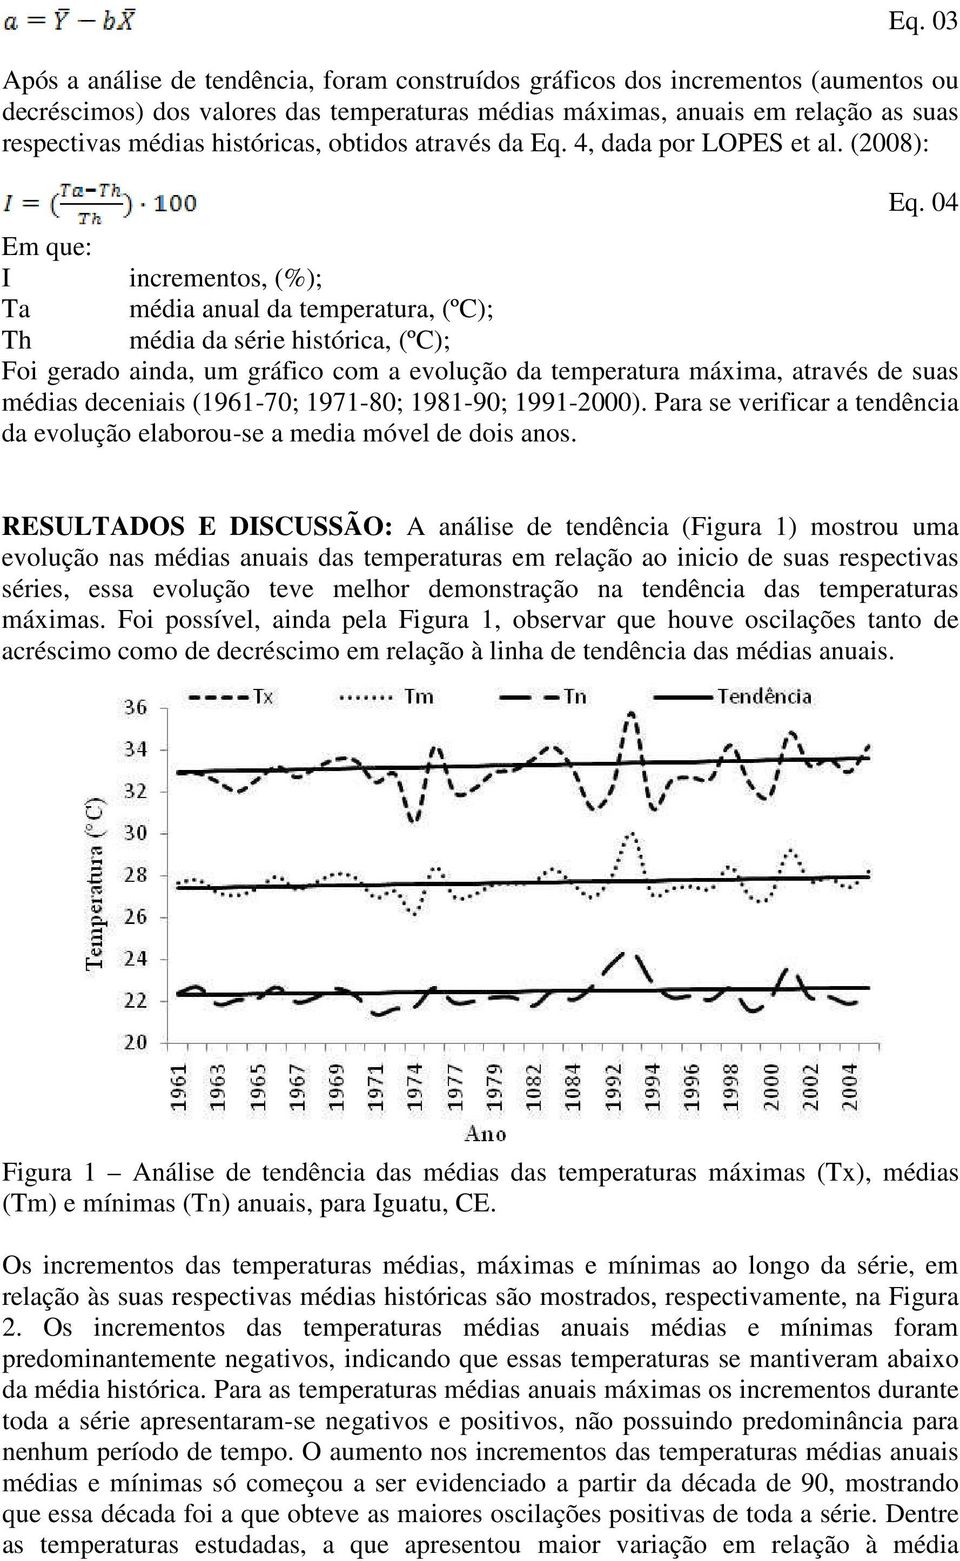 04 Em que: I incrementos, (%); Ta média anual da temperatura, (ºC); Th média da série histórica, (ºC); Foi gerado ainda, um gráfico com a evolução da temperatura máxima, através de suas médias